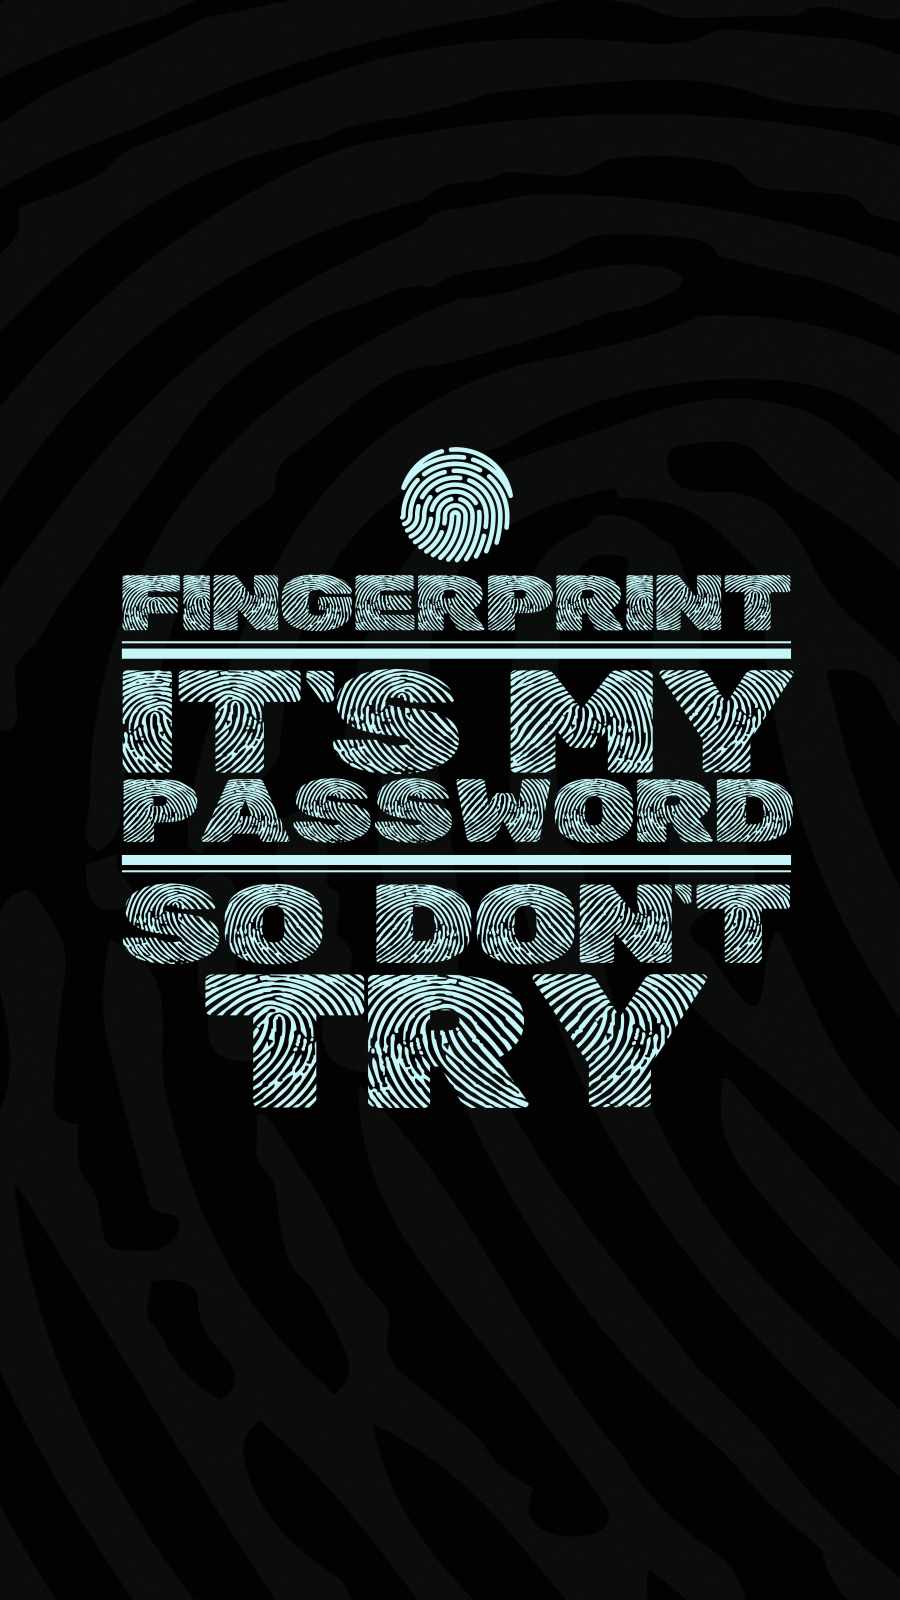 Fingerprint is my Passwrd